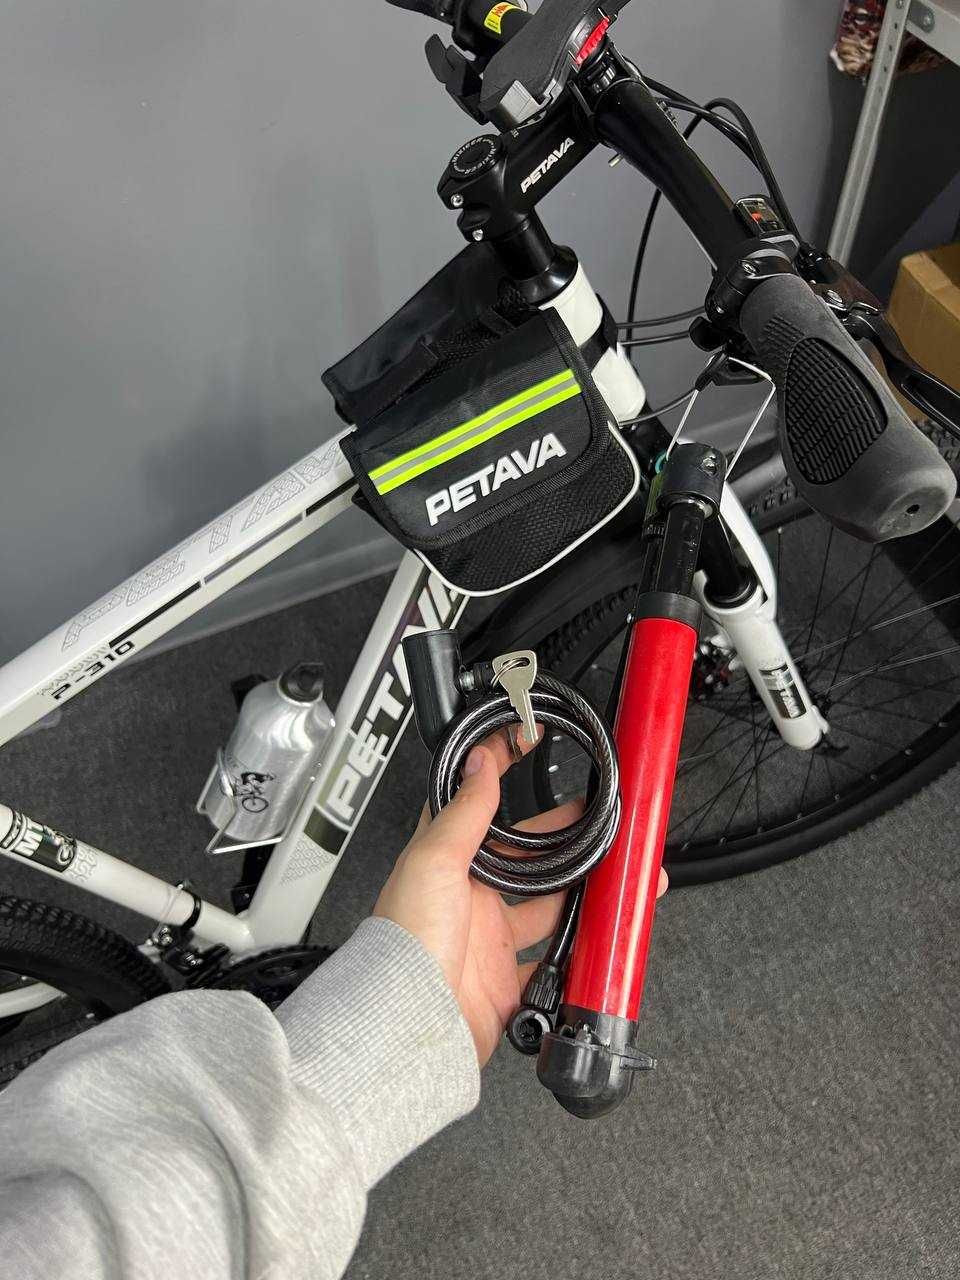 Городской велосипед Petava Pt380  29" 2021 .Рассрочка , скидки